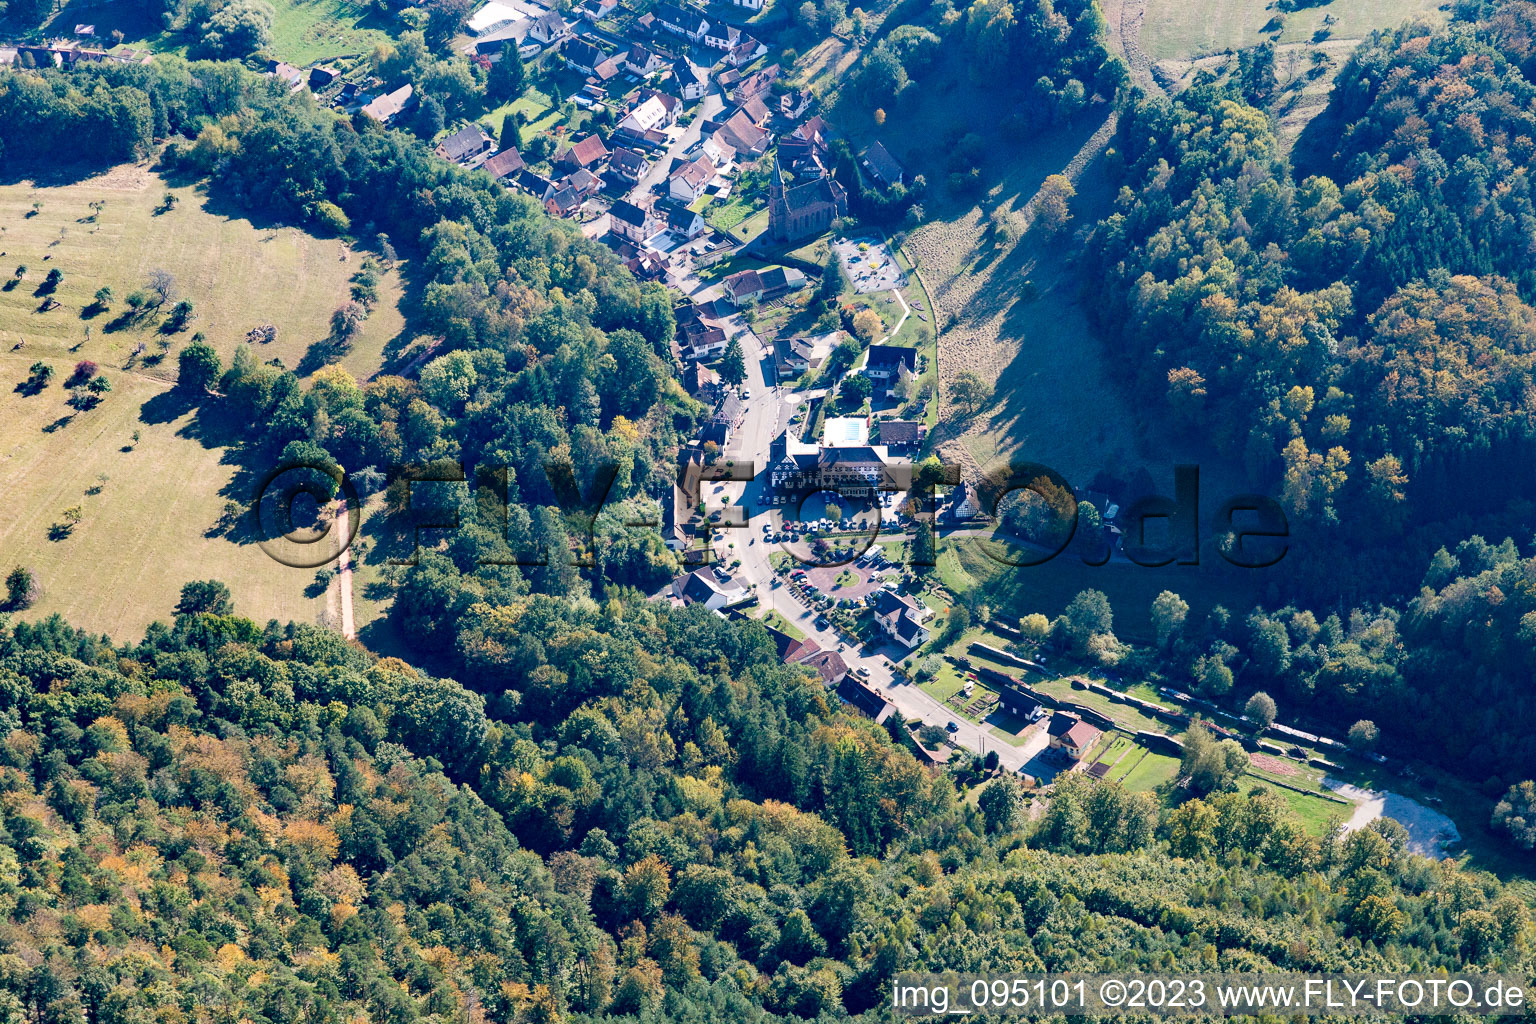 Niedersteinbach im Bundesland Bas-Rhin, Frankreich aus der Luft betrachtet